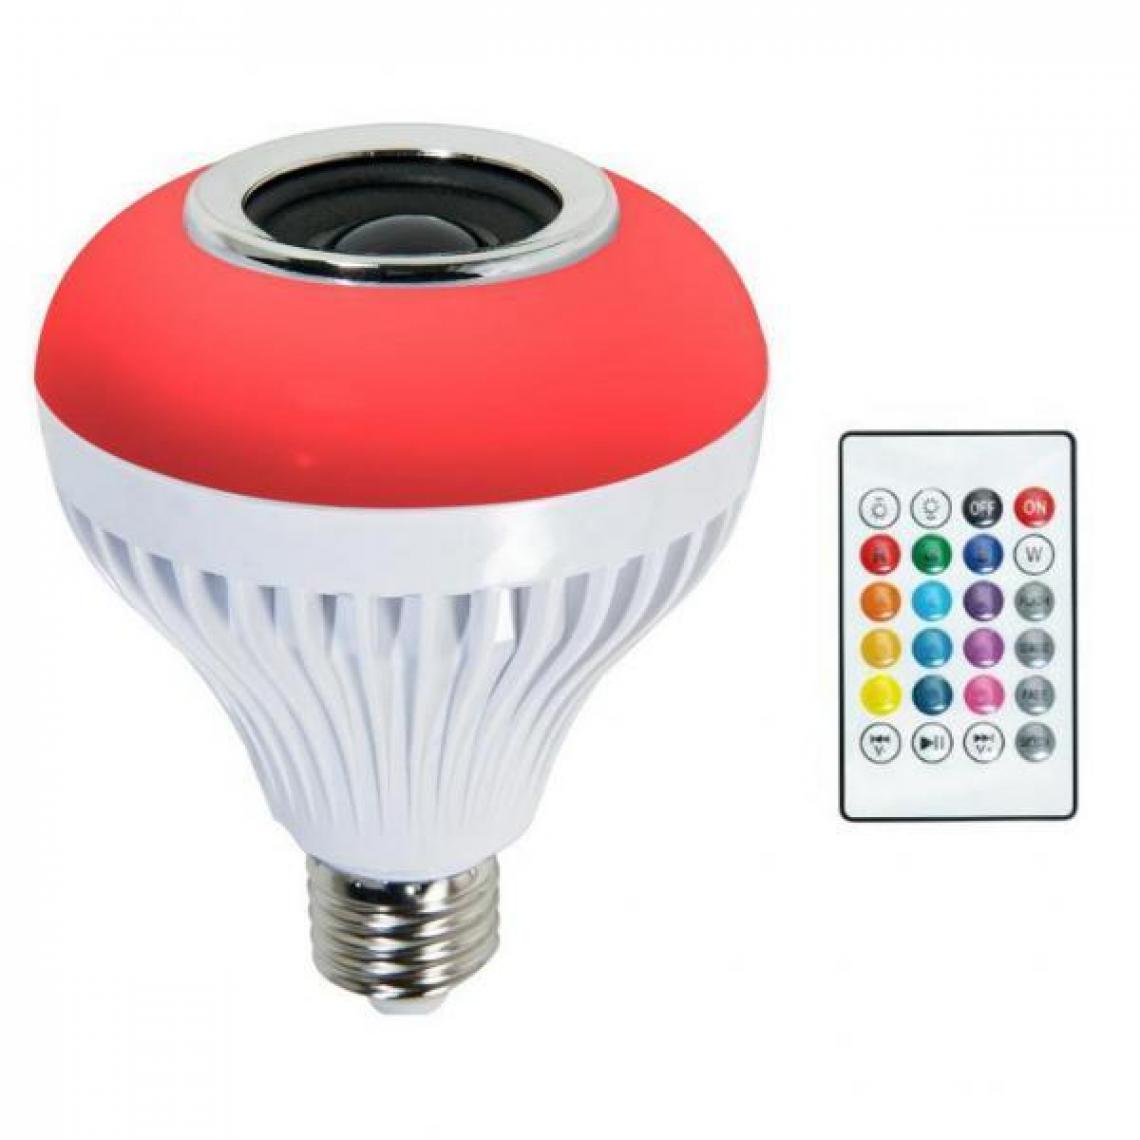 marque generique - Lampe Ampoule Musique - Ampoules LED